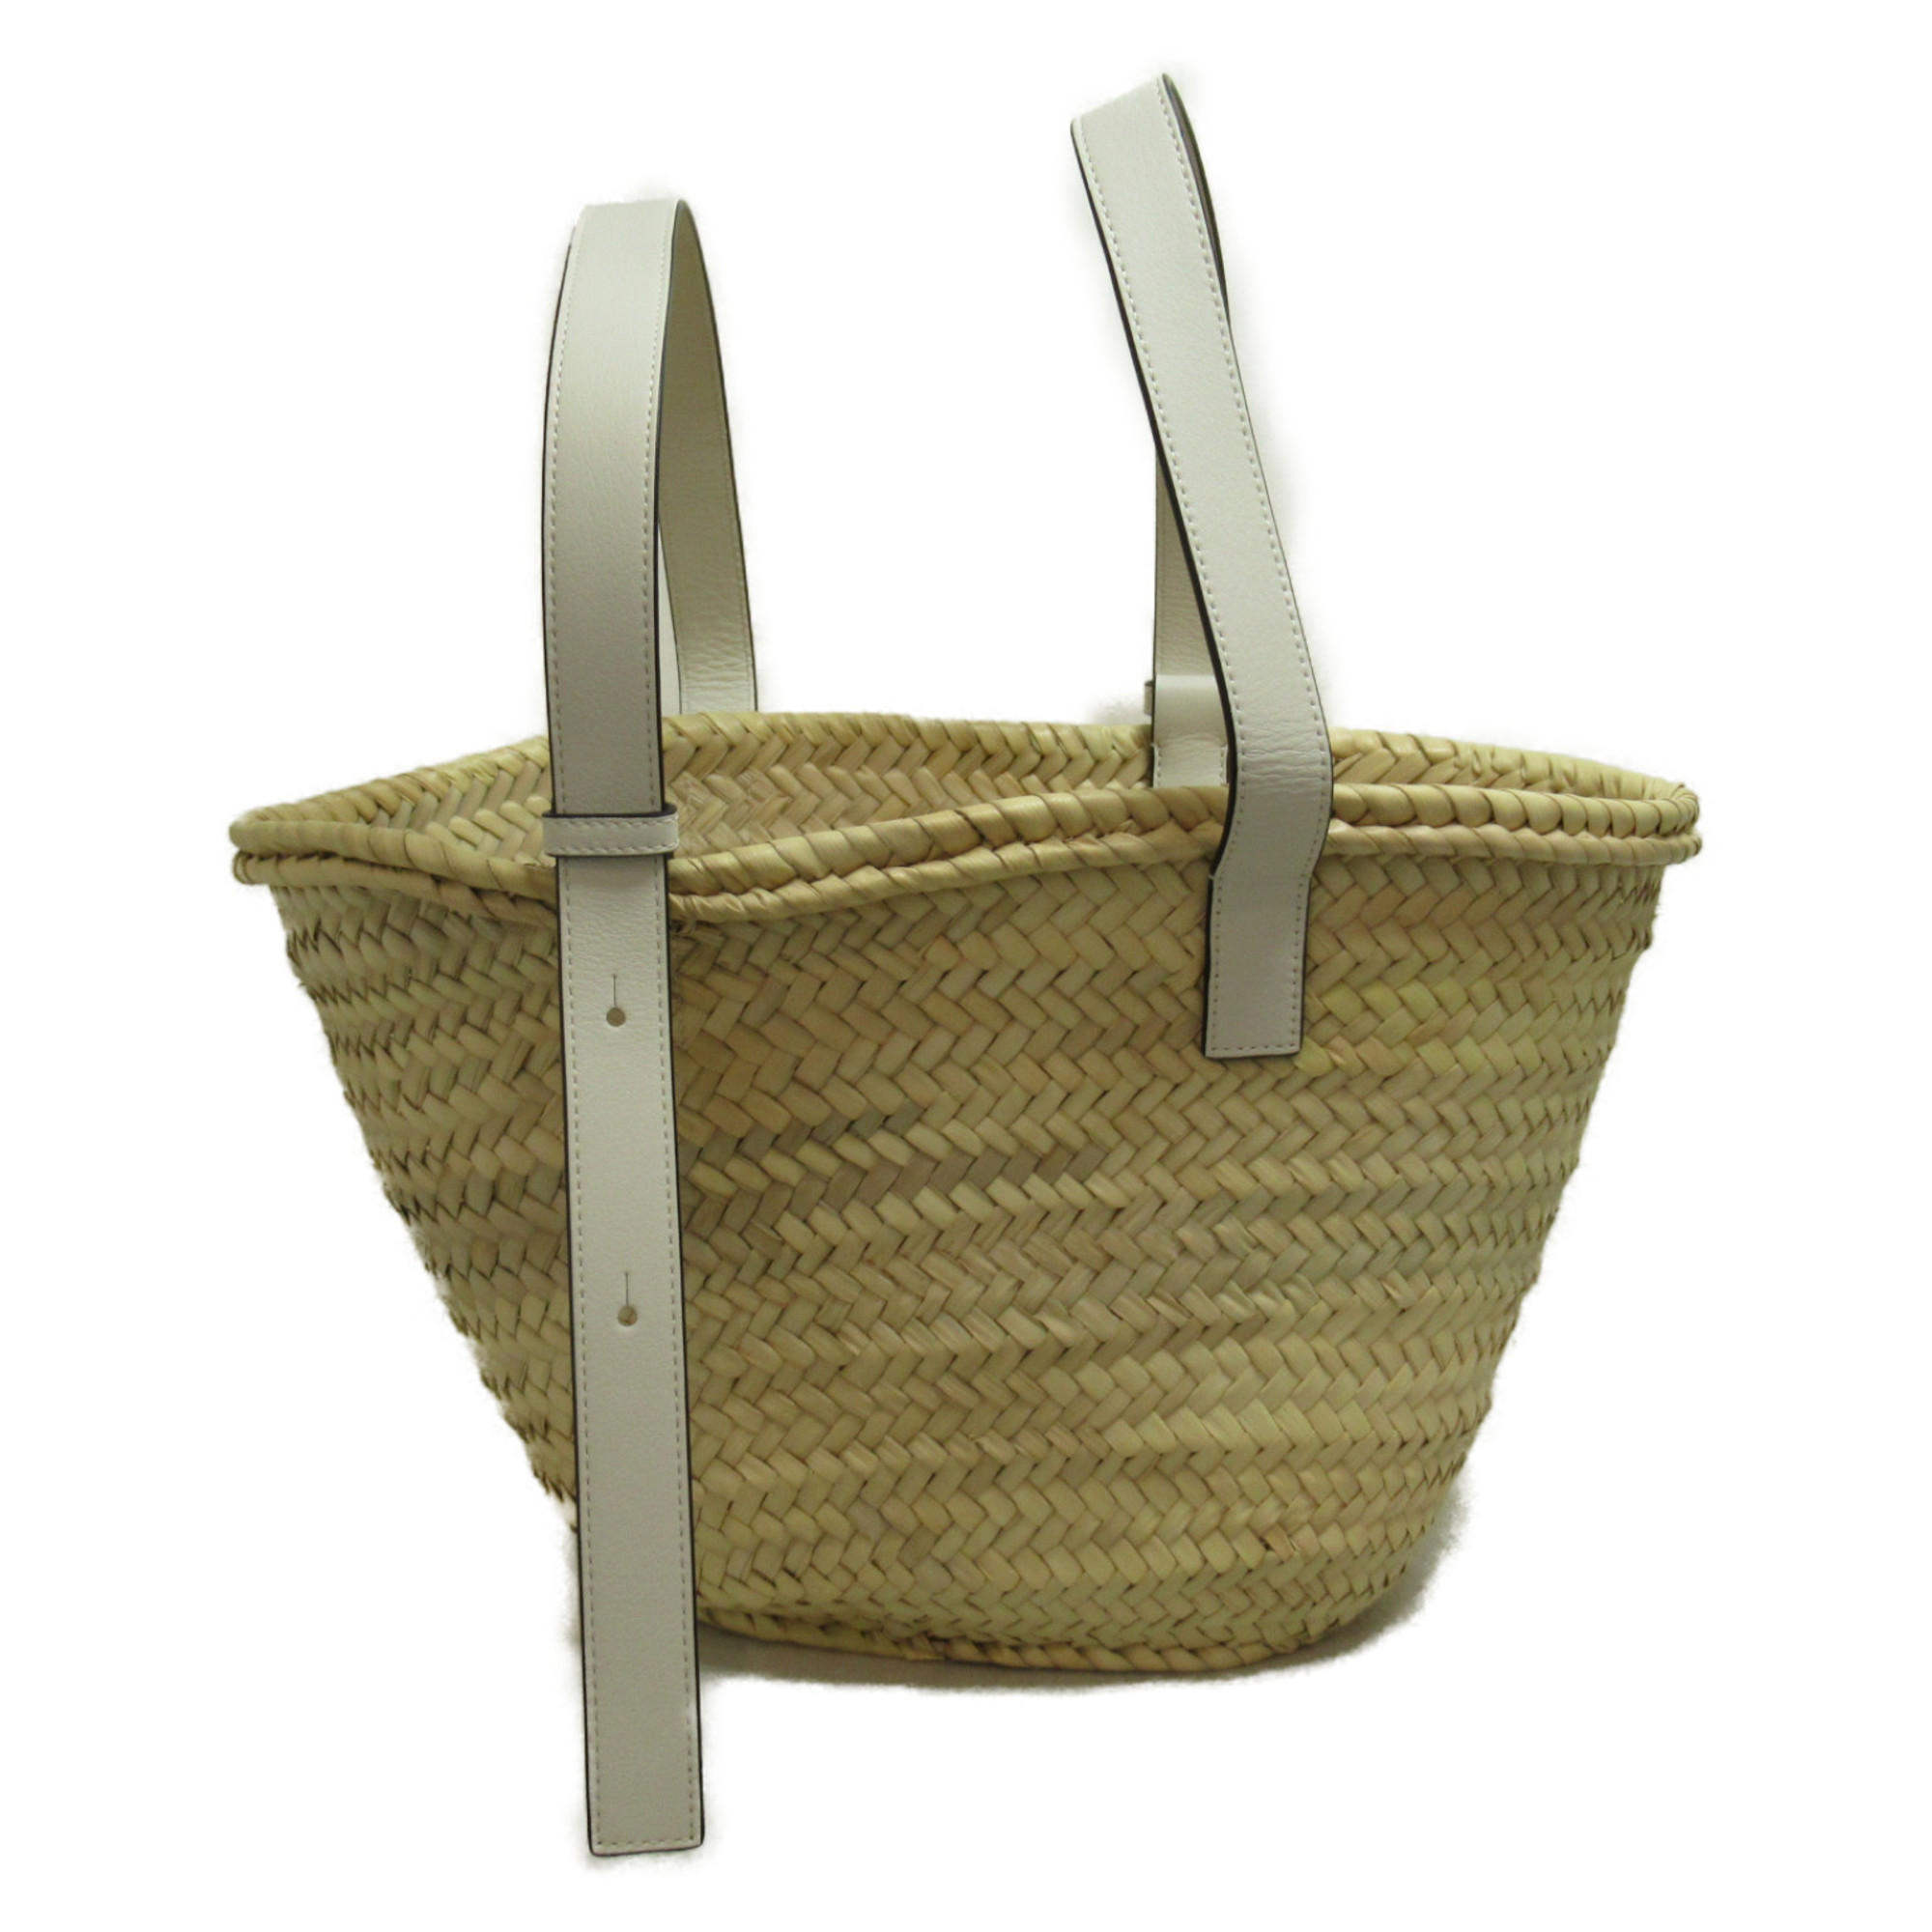 LOEWE Basket Bag Shoulder Bag White Natural Calfskin (cowhide) Palm leaf A223S92X042163